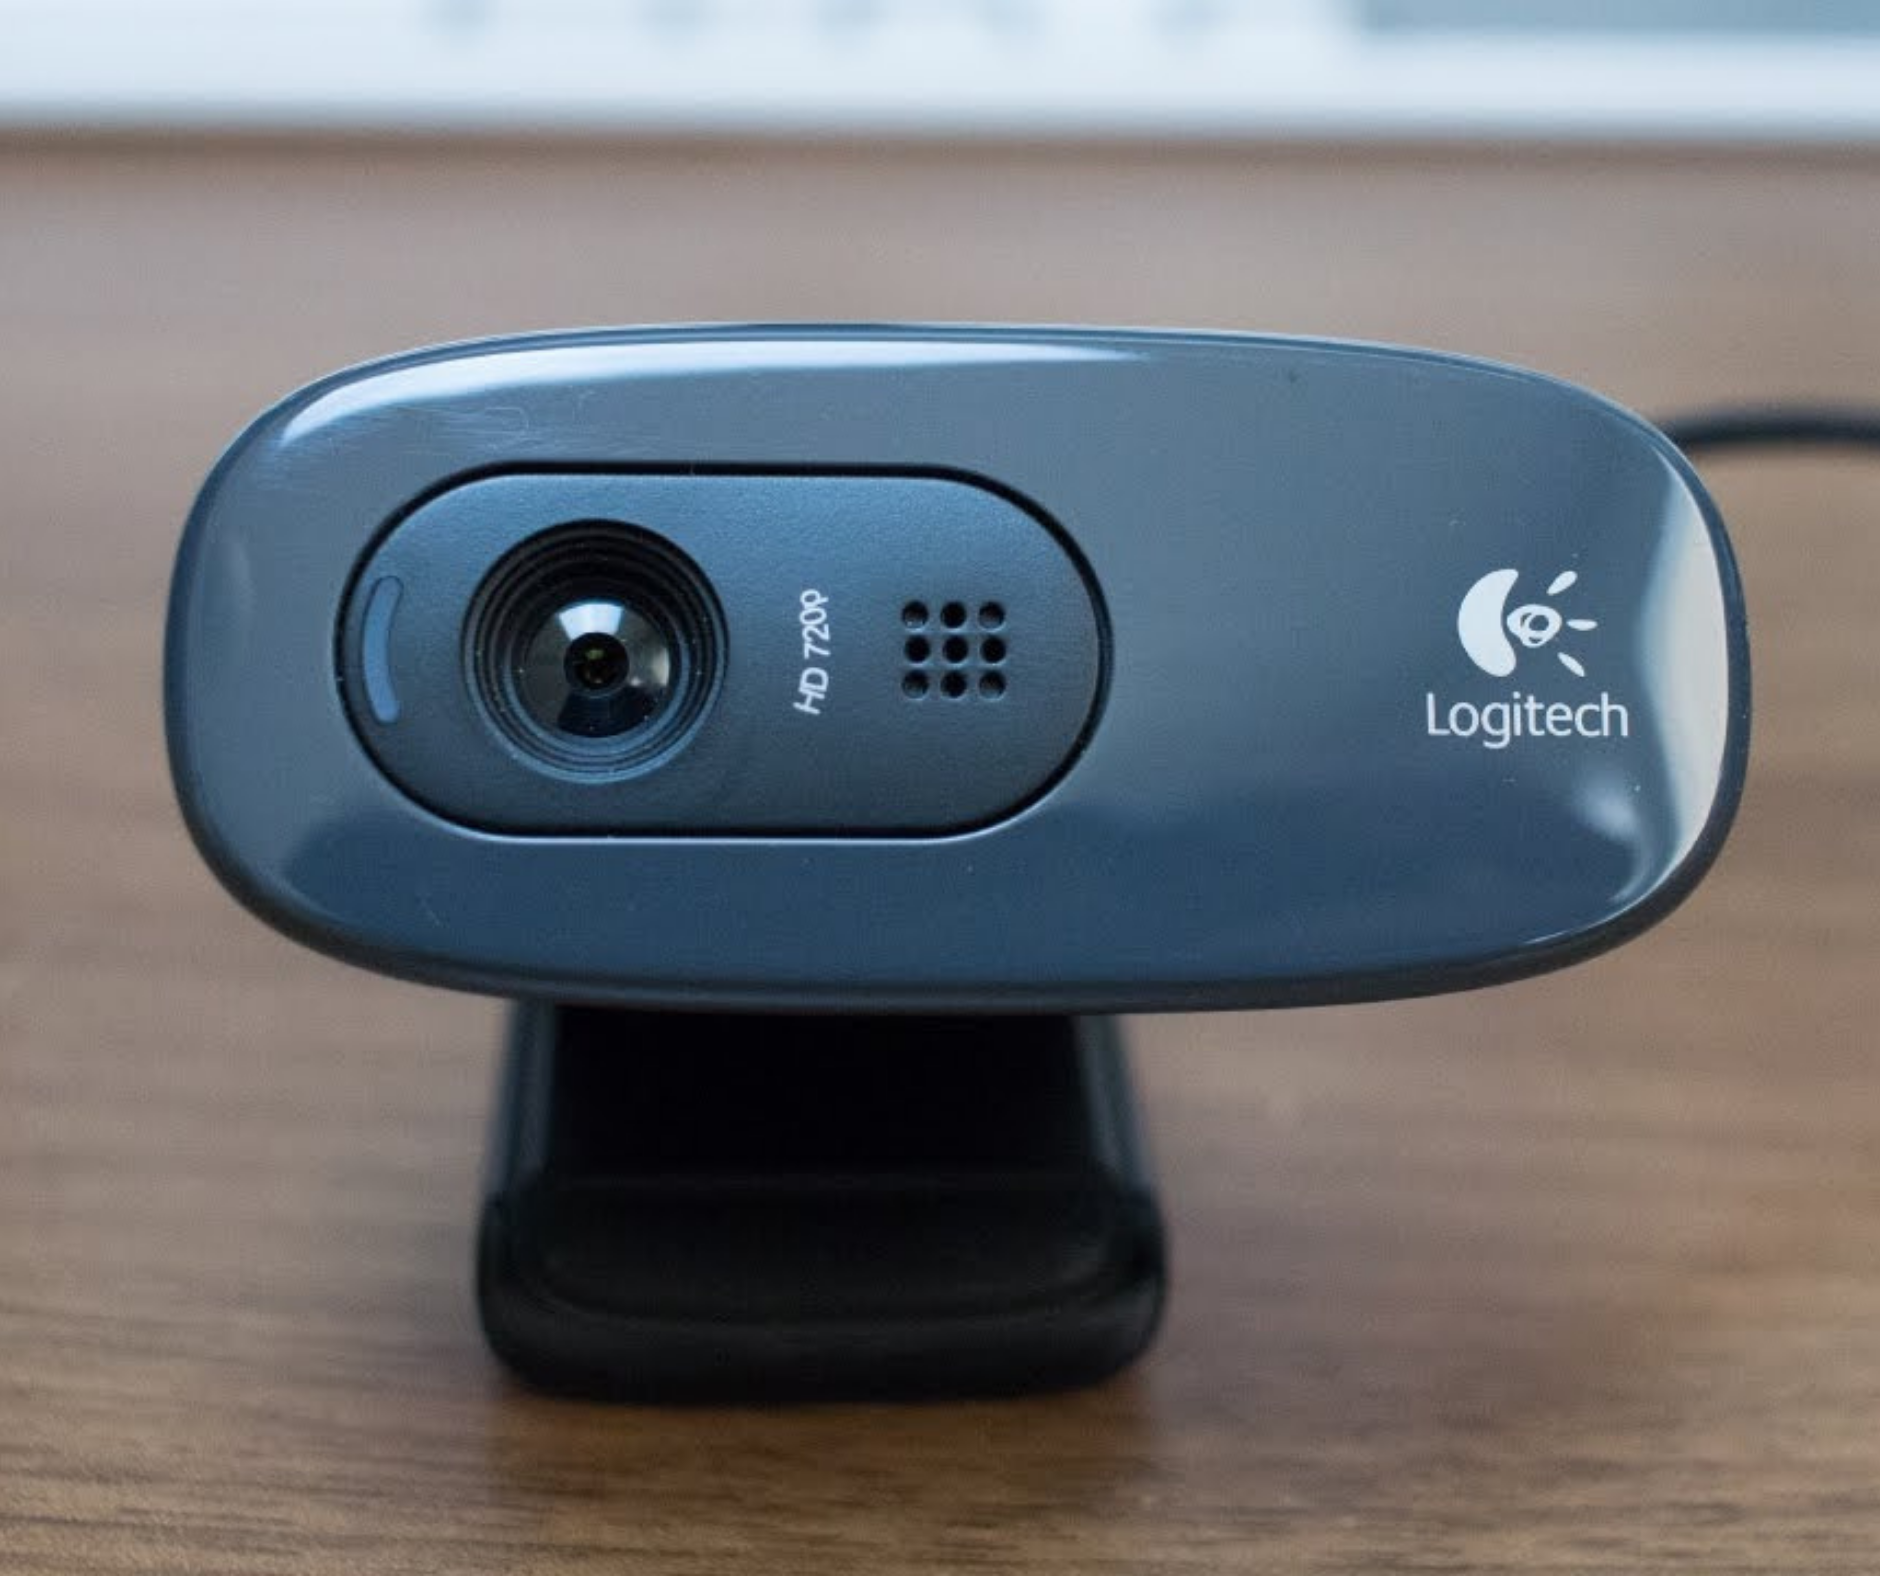 電玩科技】Logitech C270 HD Webcam 網路攝影機網課、會議必備- 科技- 香港格價網Price.com.hk